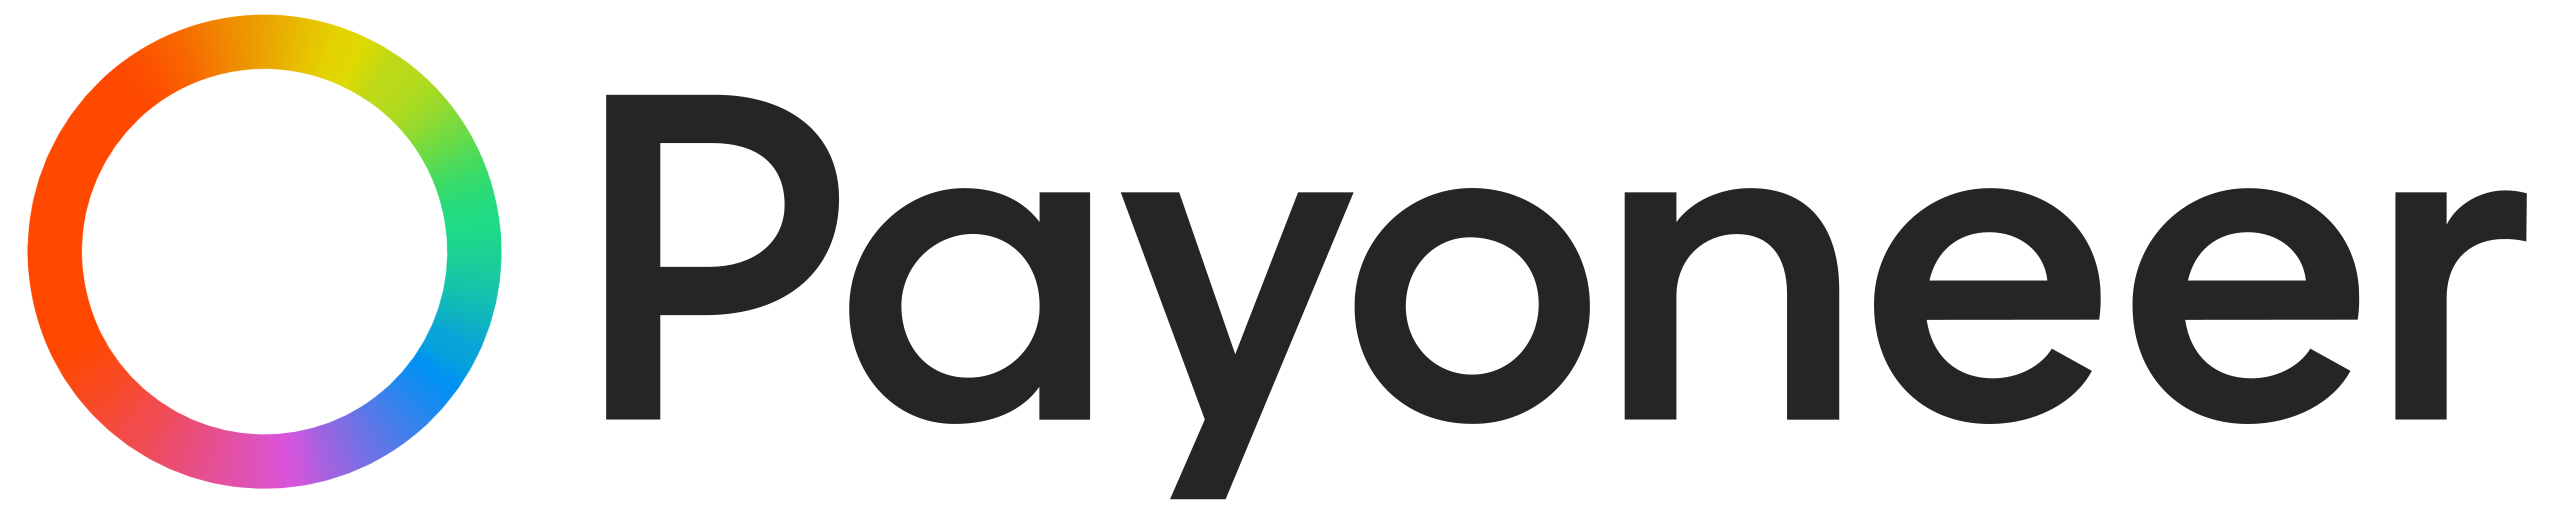 Payoneer_logo